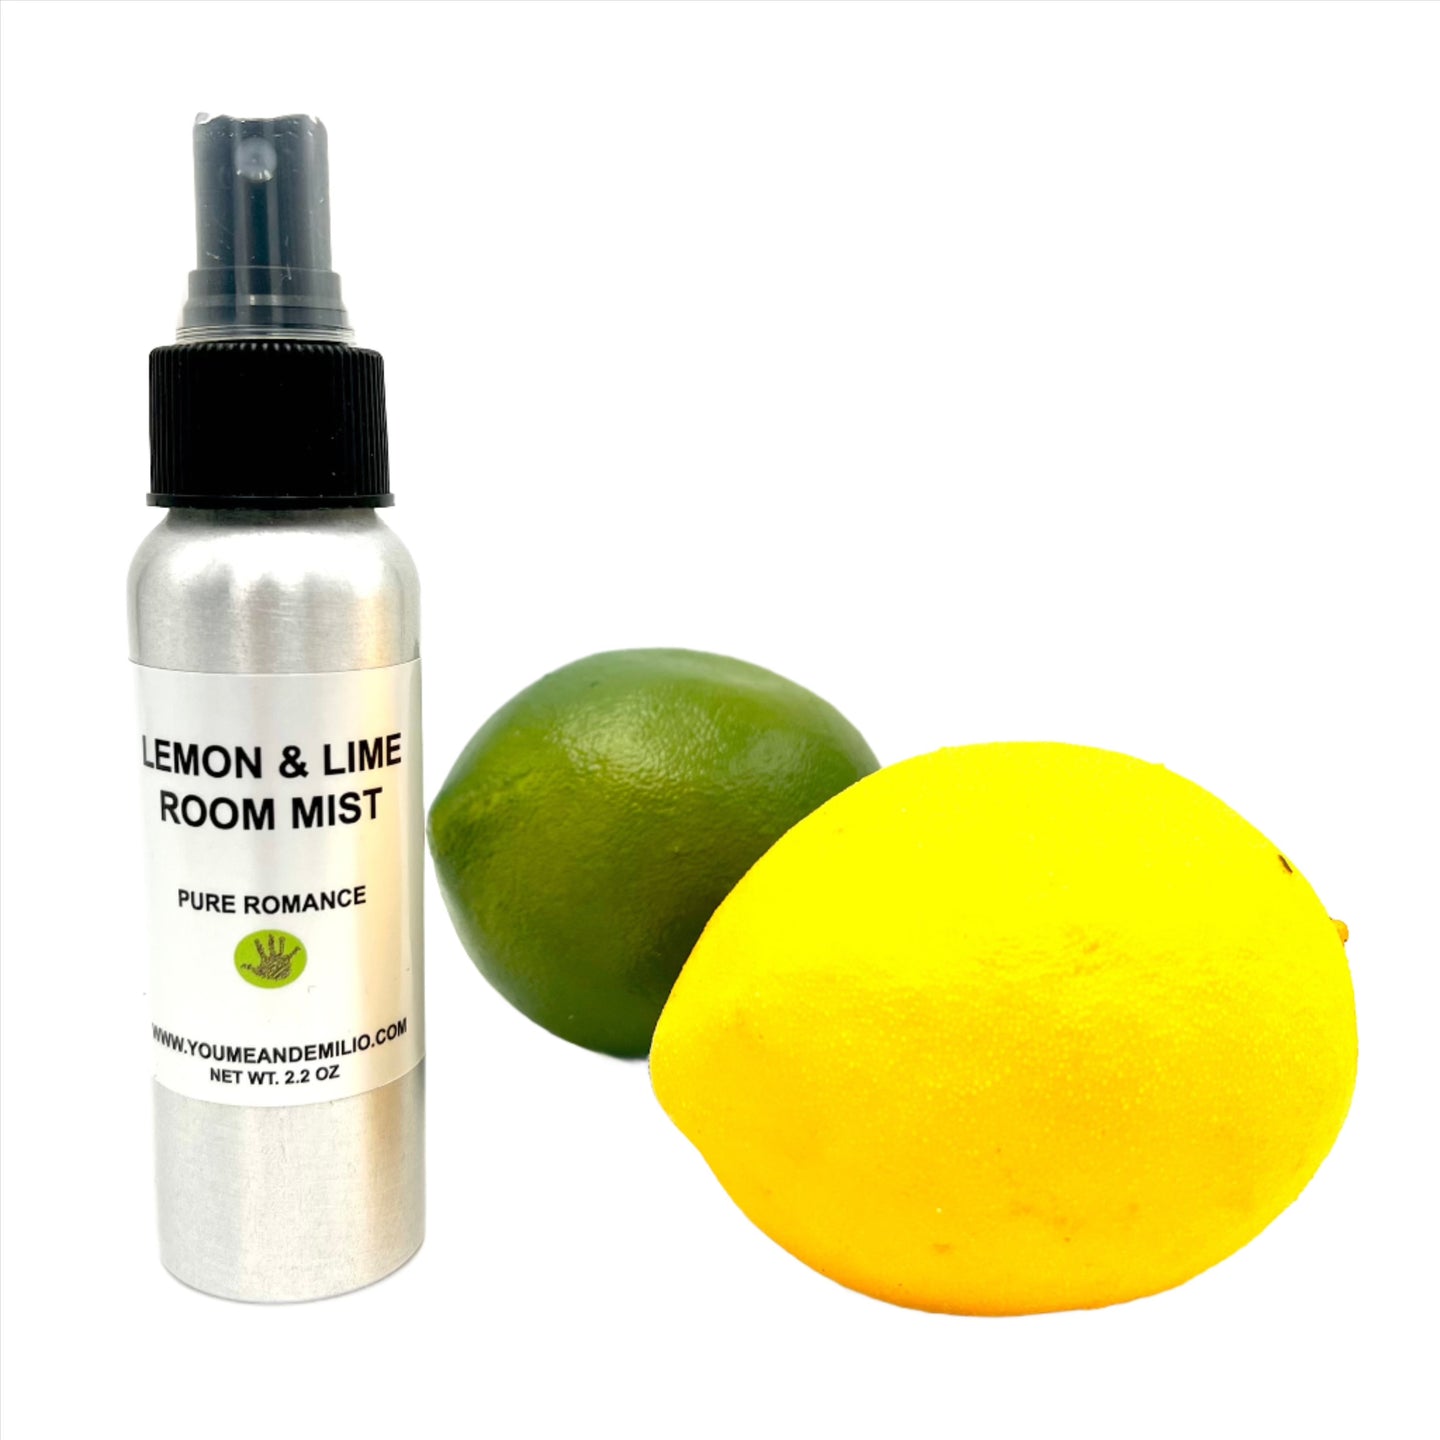 Lemon & Lime Room Mist